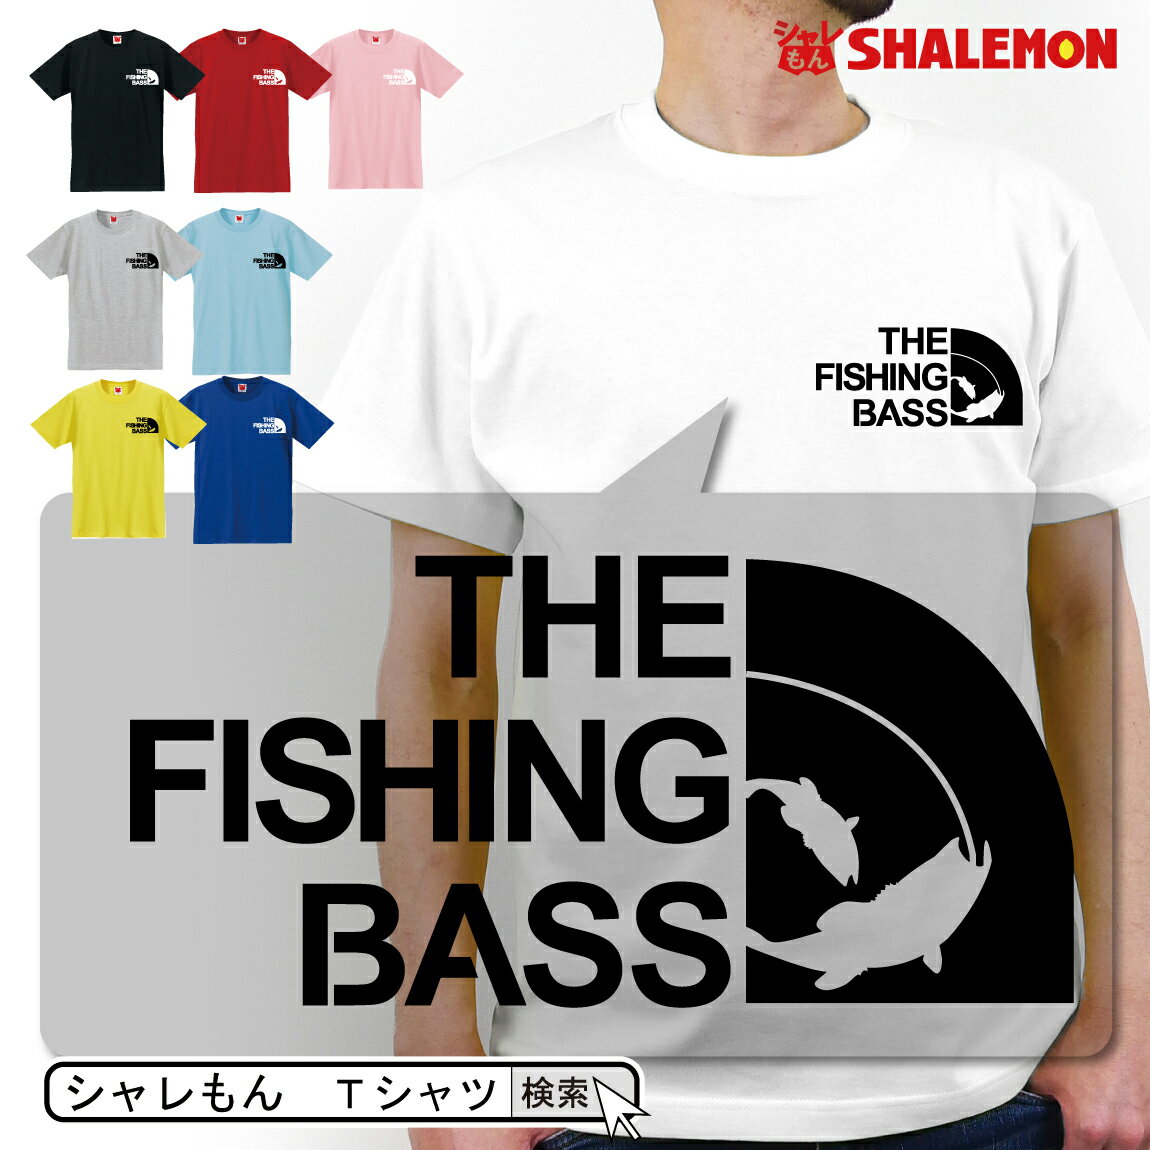 シャレもん アニマル おもしろTシャツ 【 選べる8色 Tシャツ THE FISHING BASS フェイス 】バス釣り 釣り ブラックバ…